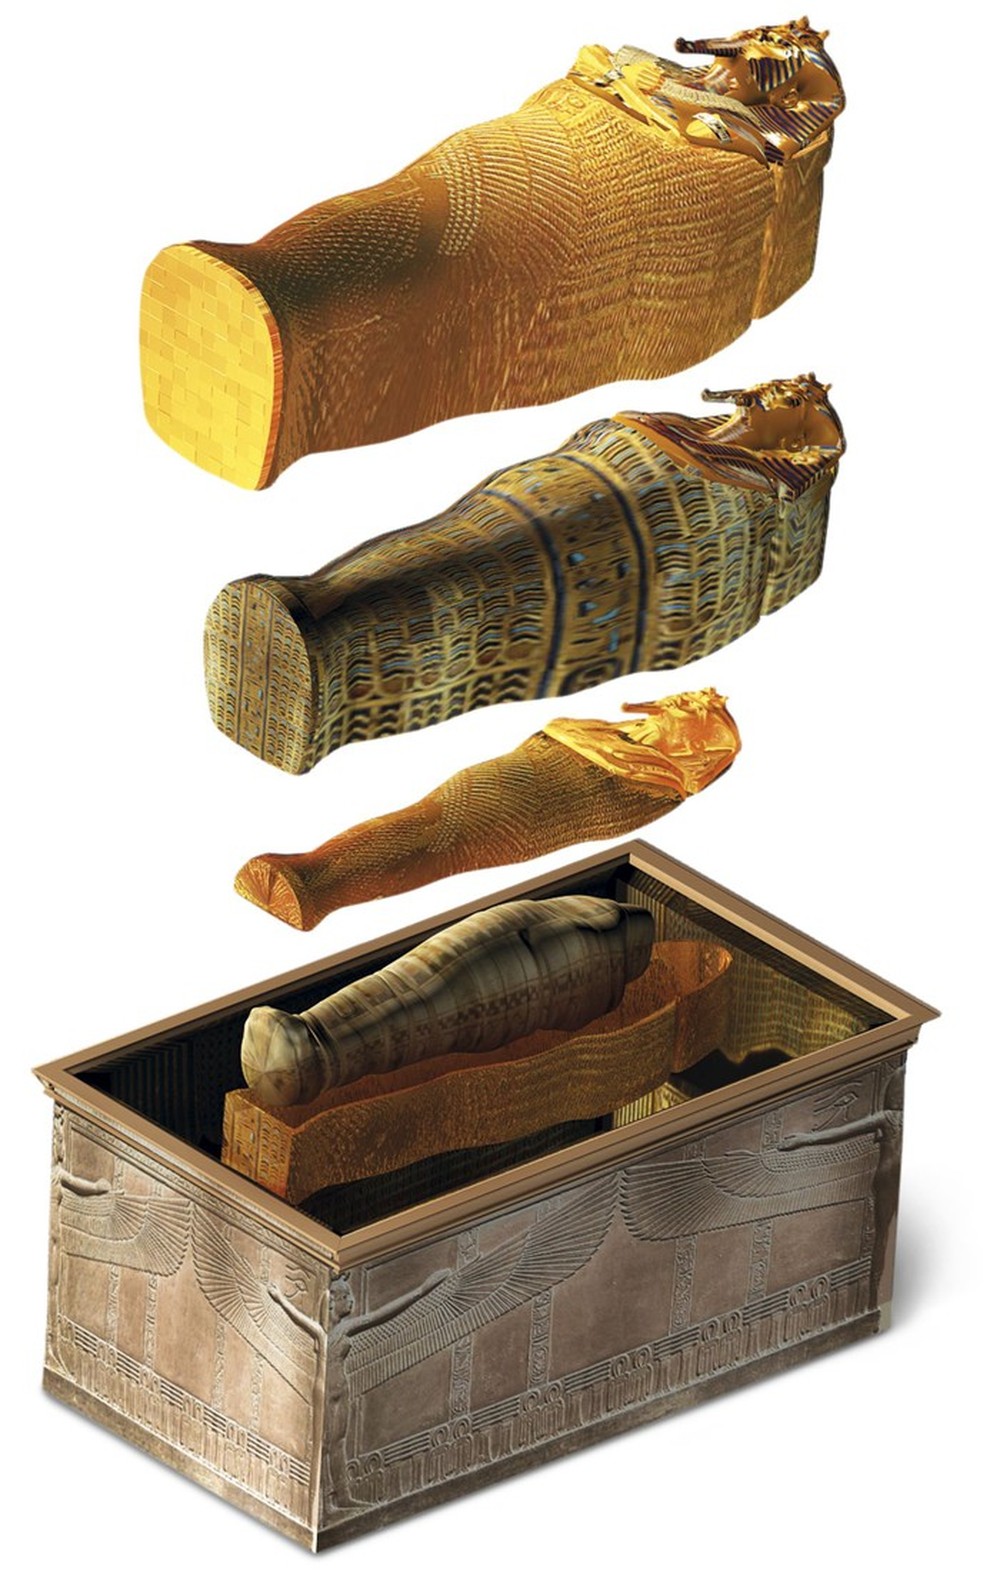 Bí ẩn về nguồn gốc của những xác ướp Ai Cập, tại sao chúng có thể tồn tại hàng nghìn năm? - Ảnh 10.